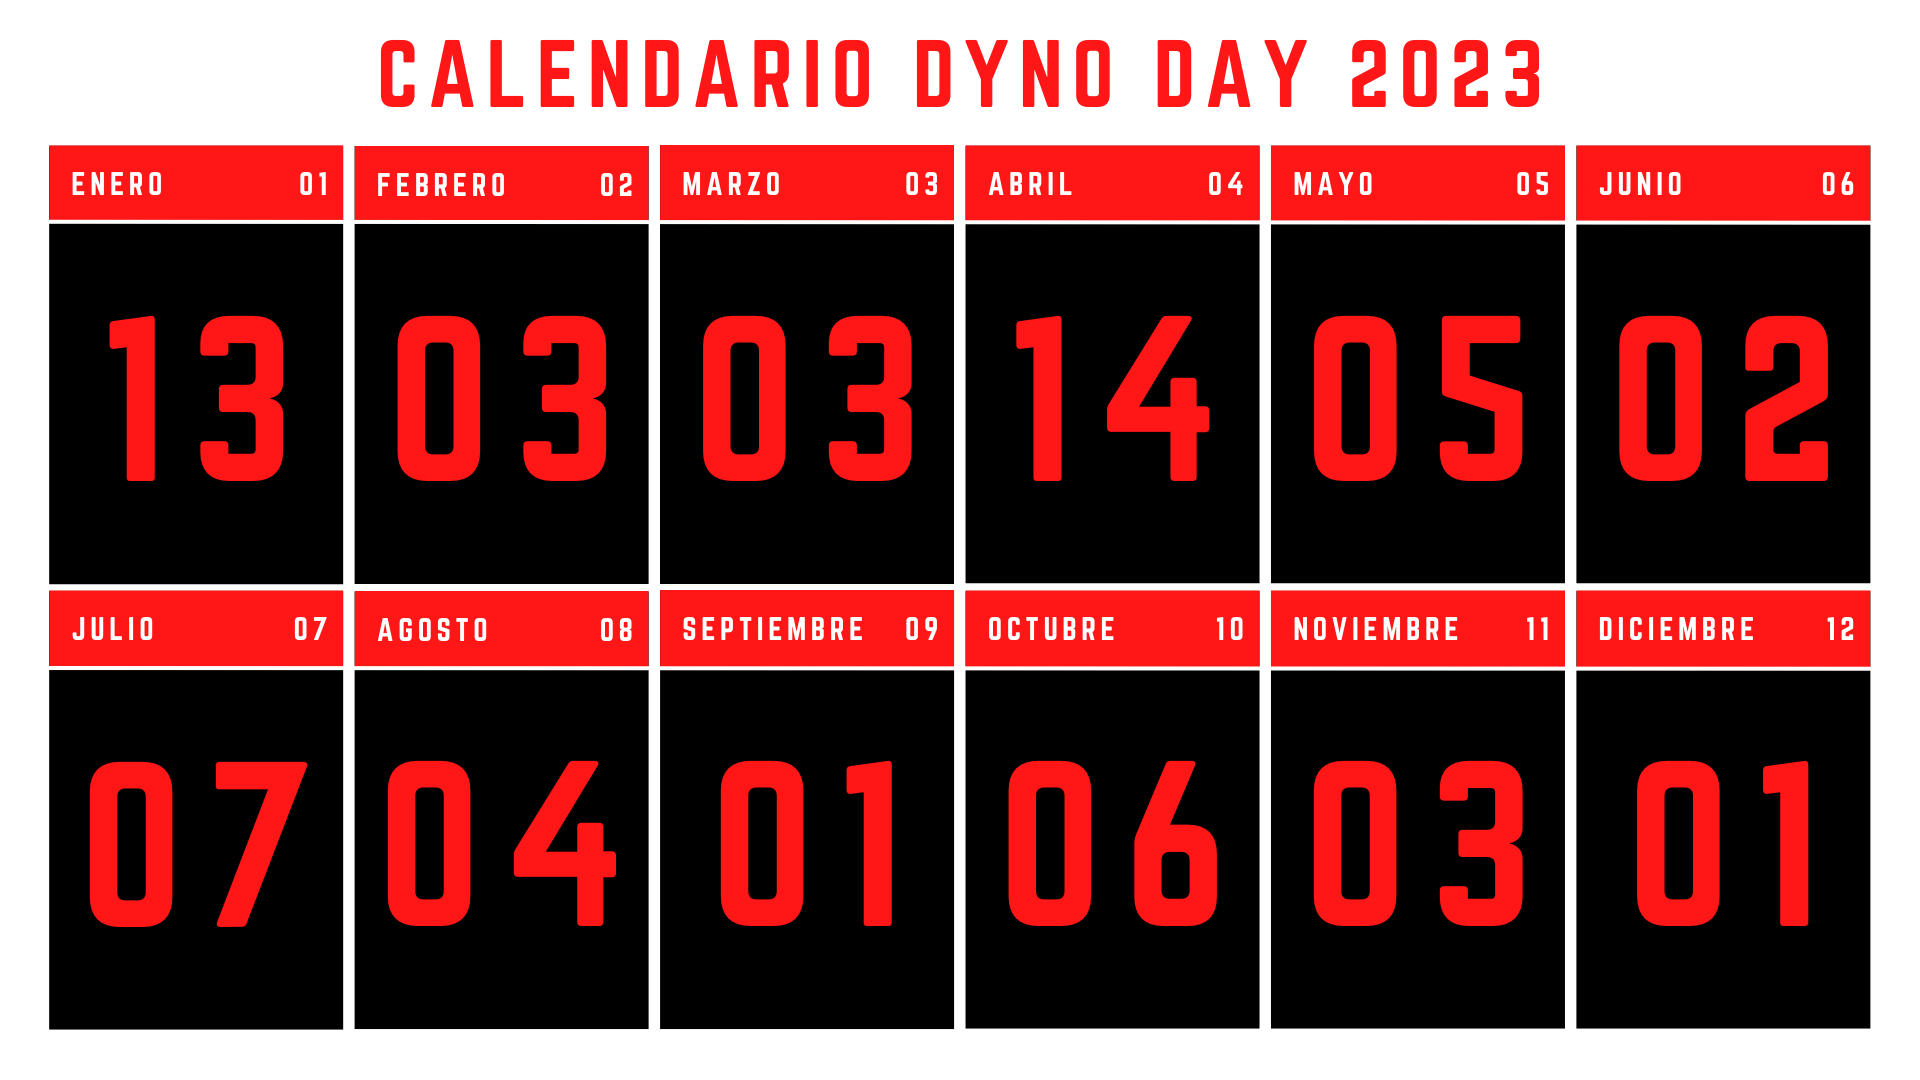 Calendario Dyno Day 2023